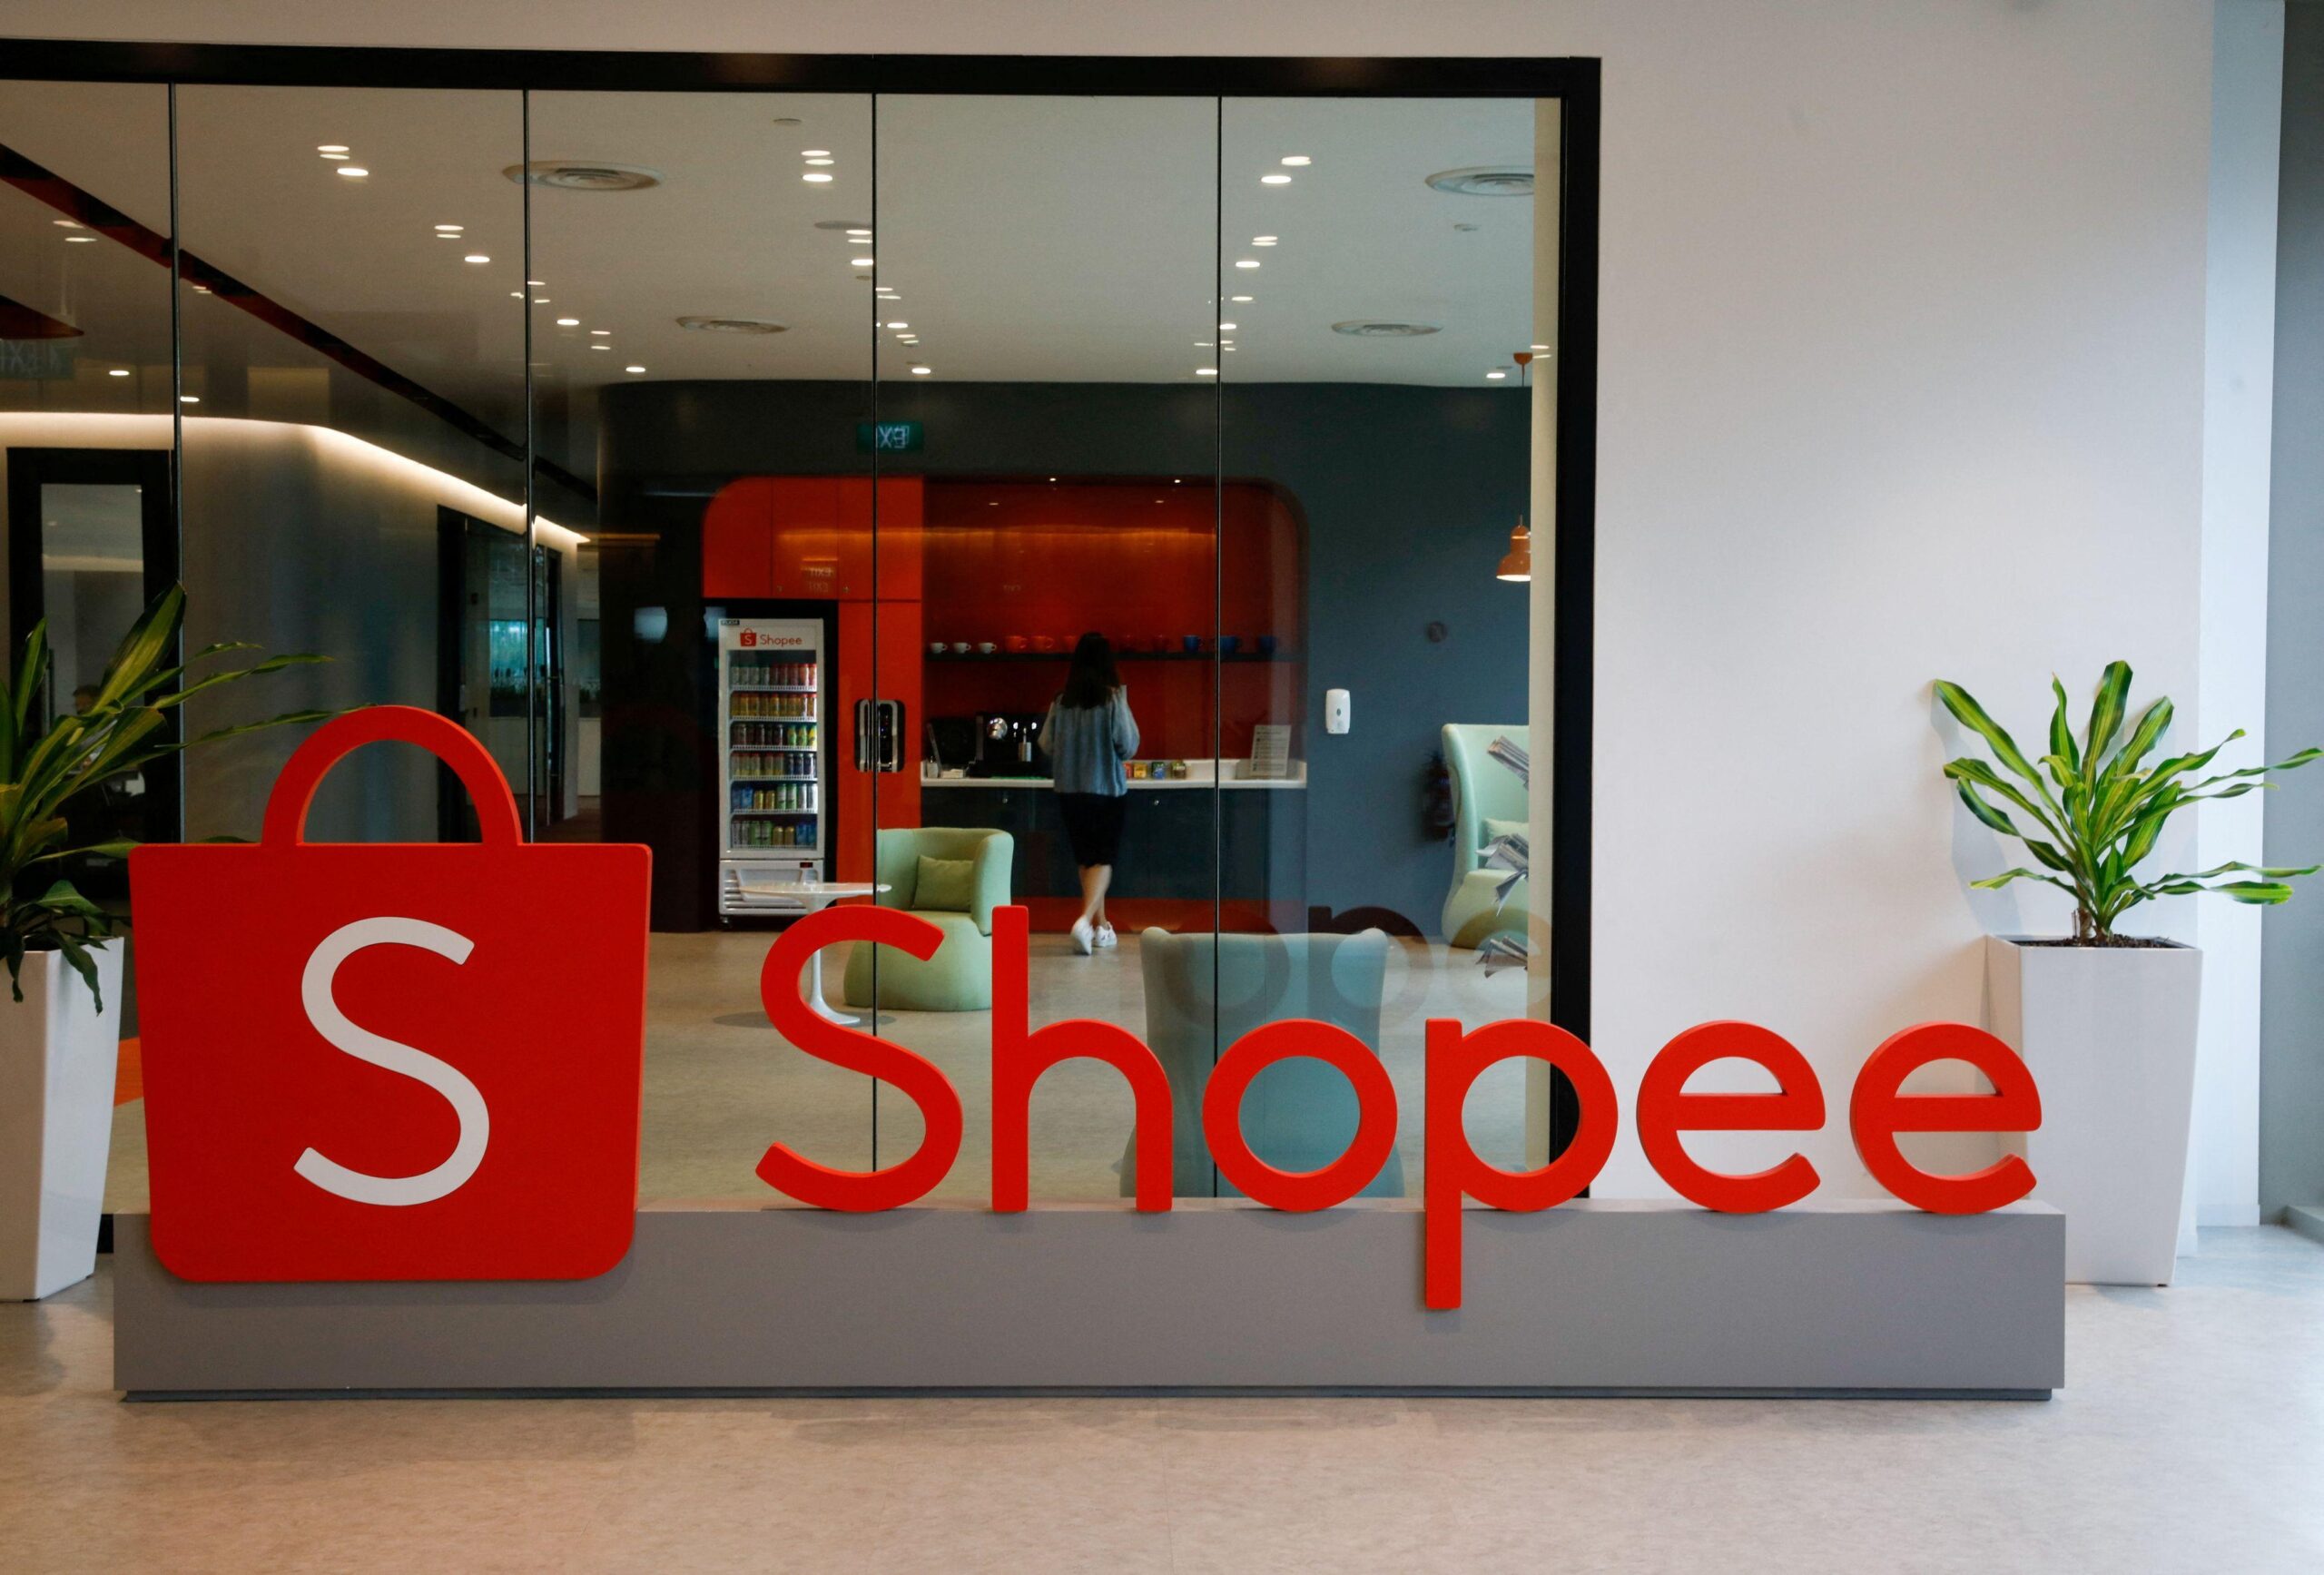 Shopee encerrou operações na Argentina (Foto Reprodução/Internet)